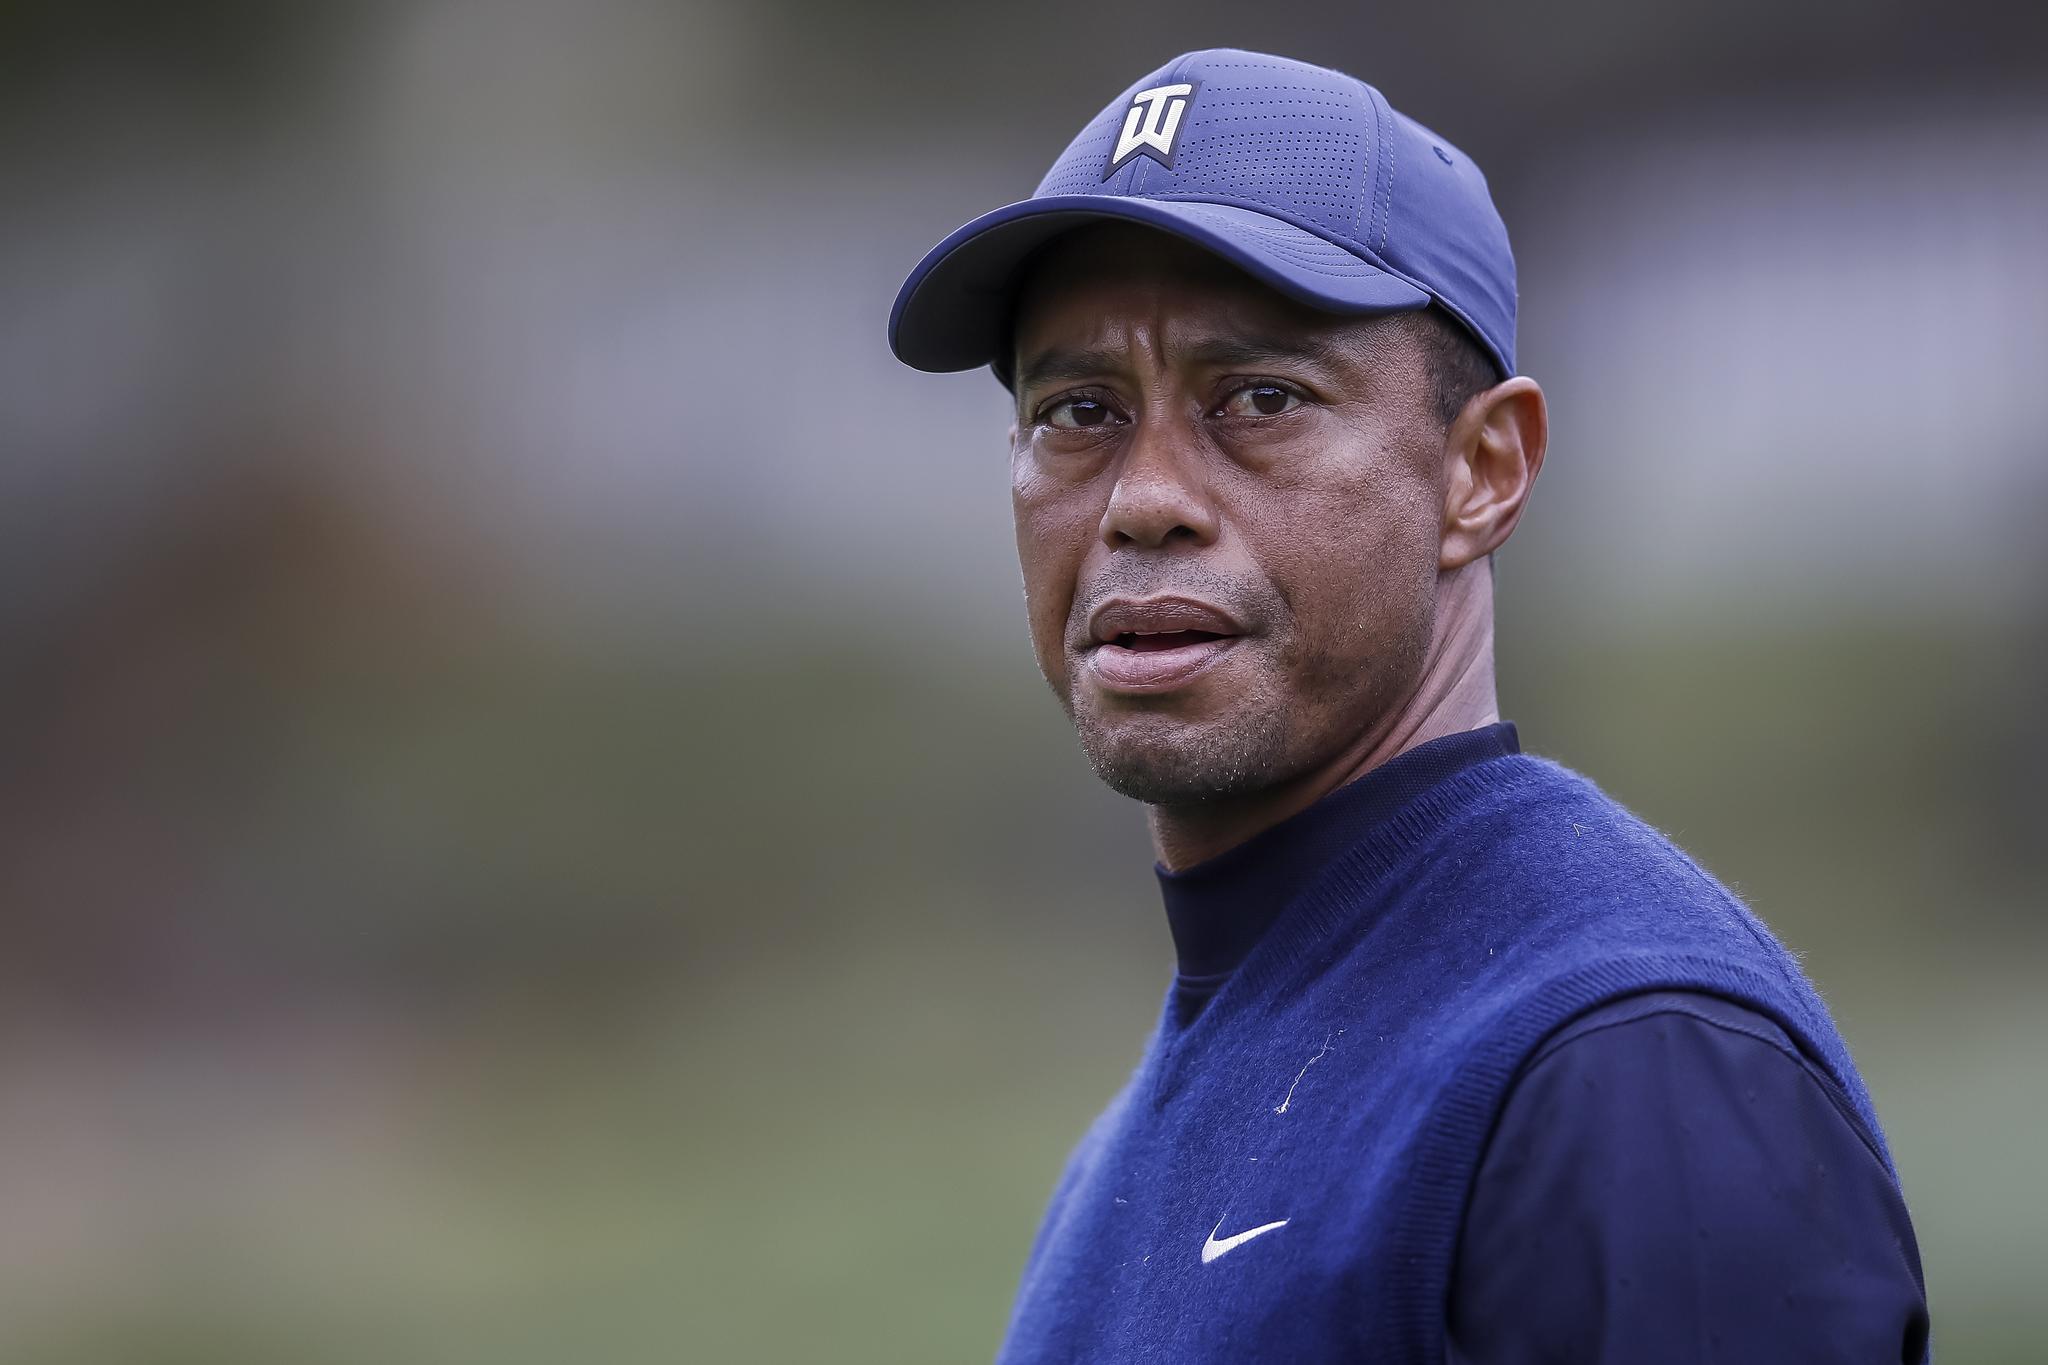 SKADET: Tiger Woods måtte opereres etter en alvorlig bilulykke i California tirsdag.